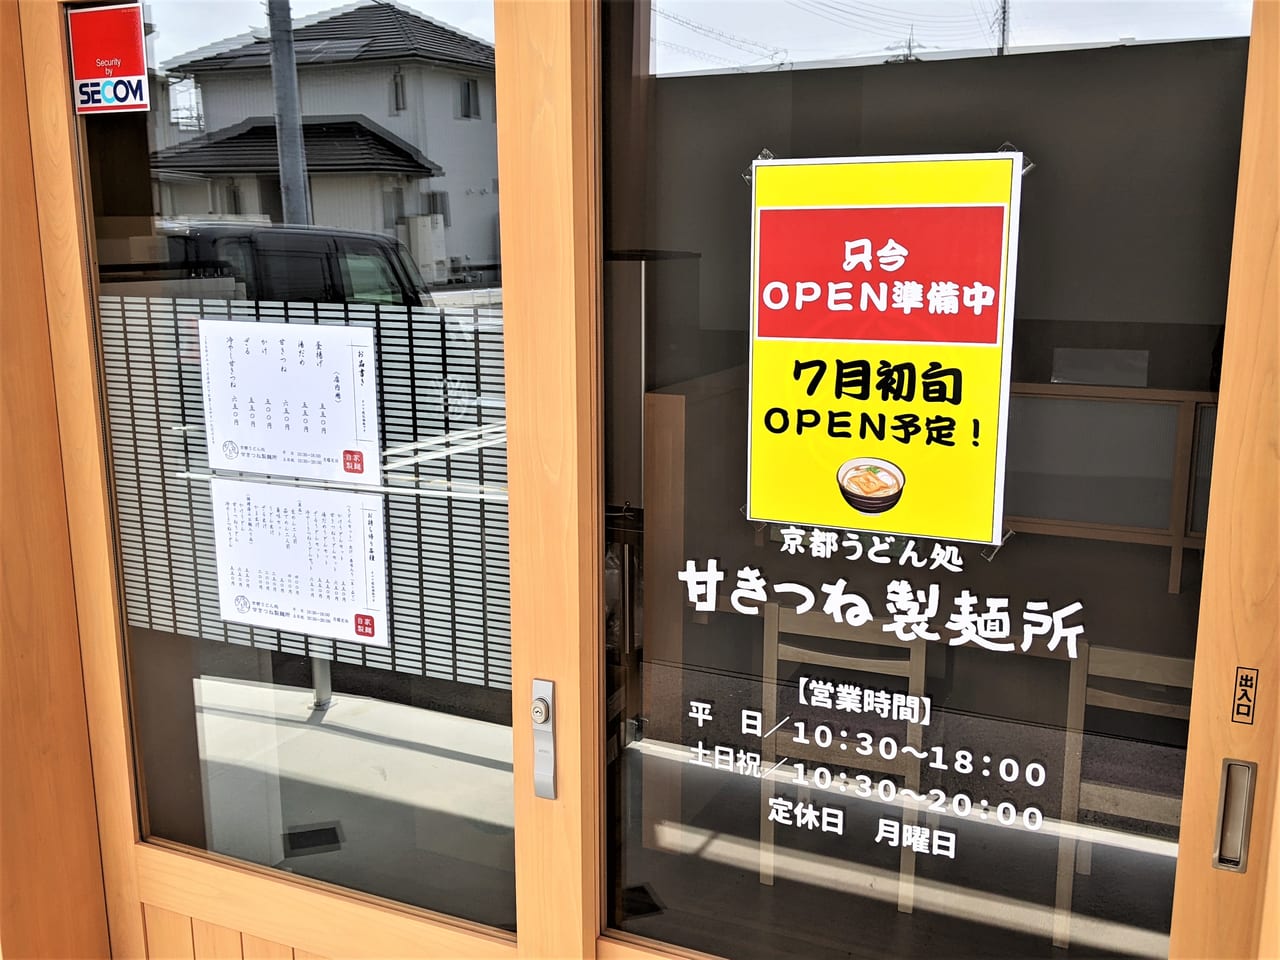 京都うどん処甘きつね製麺所のオープンのお知らせ